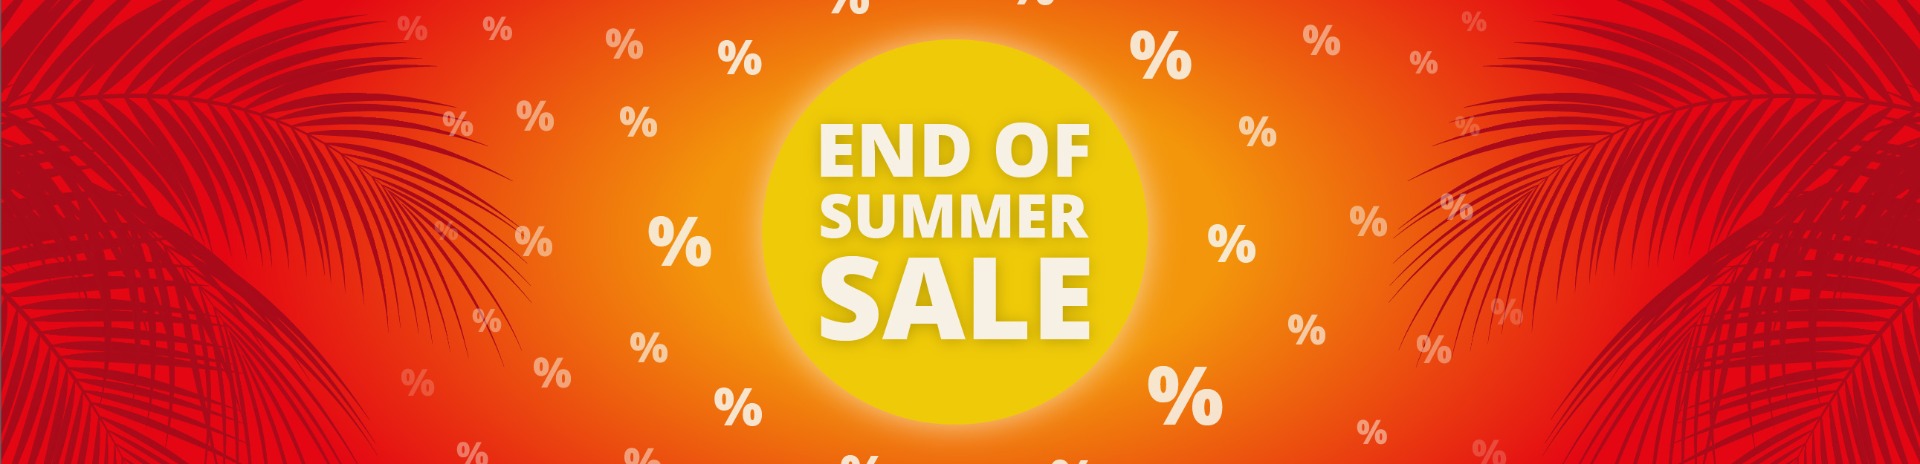 End of Summer Sale banner